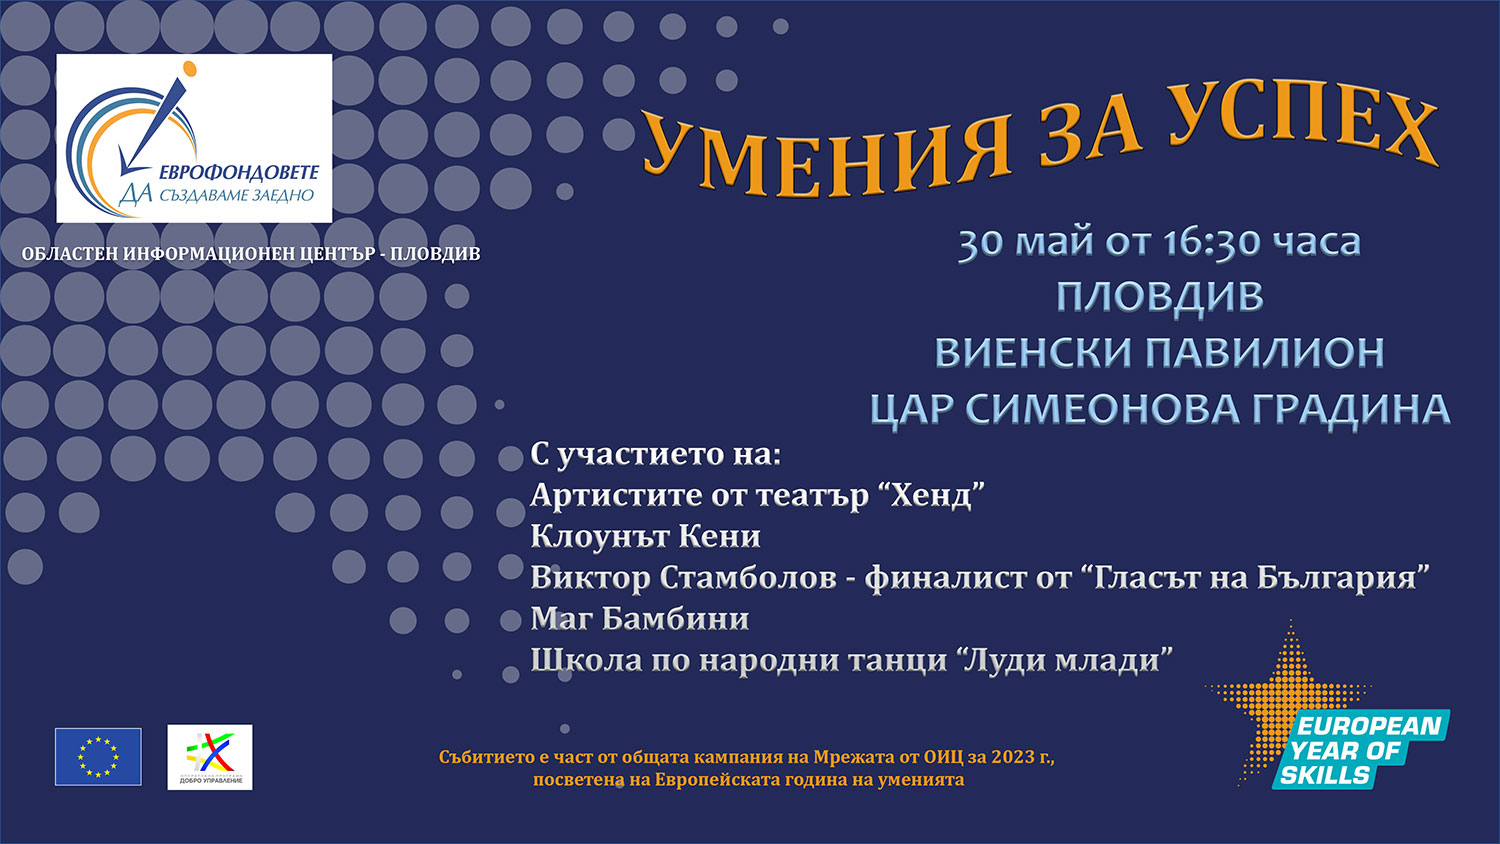 Със забавна програма Областен информационен център – Пловдив отбелязва Европейската година на уменията 2023 г.